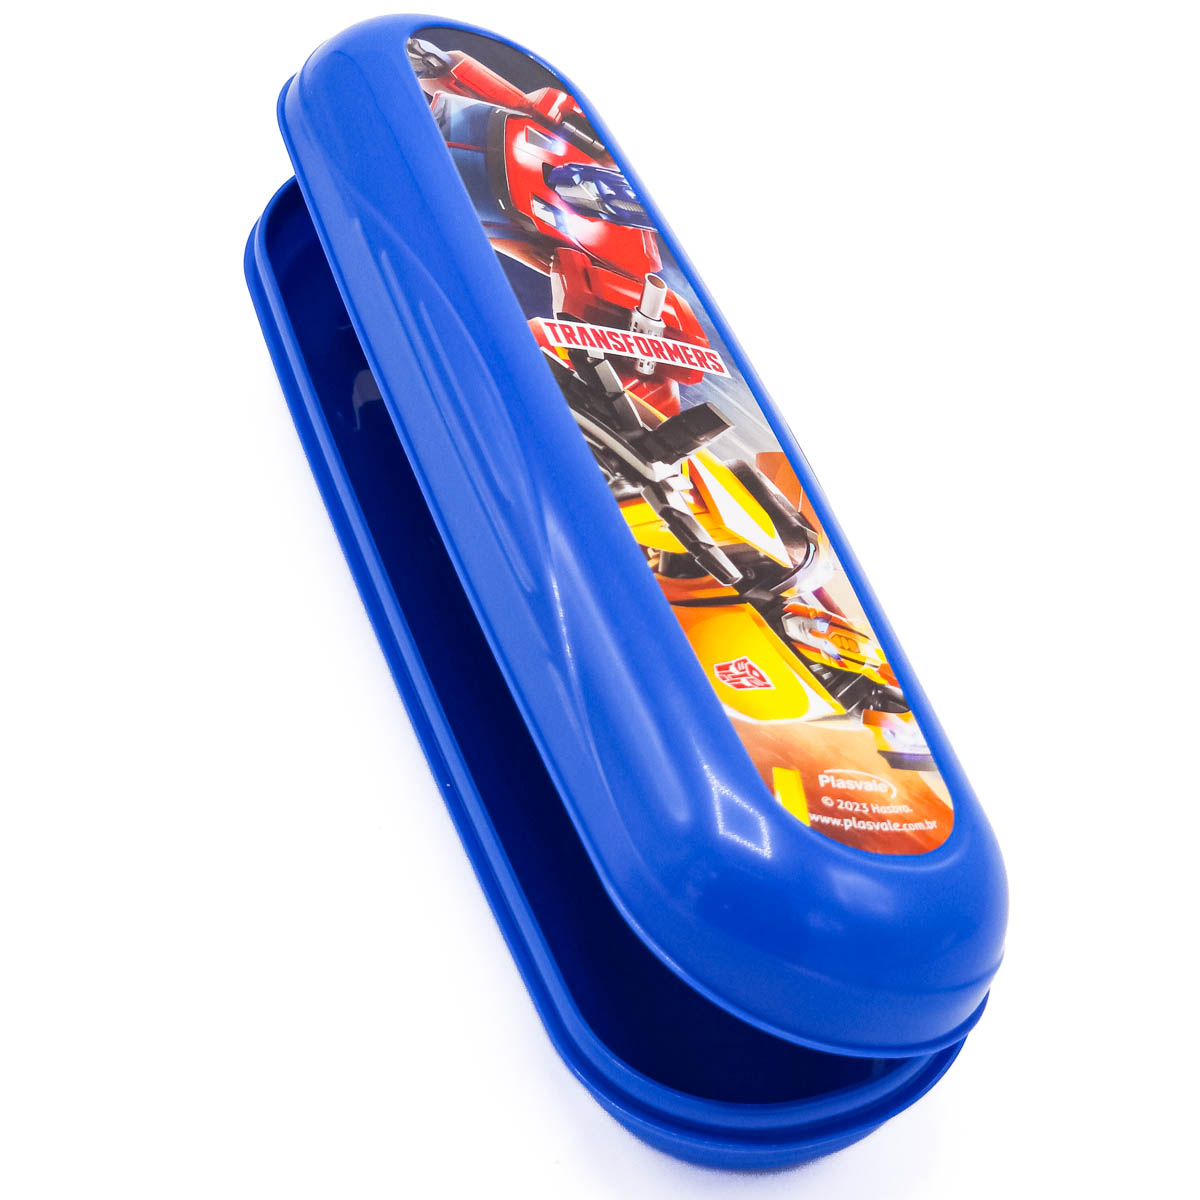 Imagem do produto: Estojo Porta Escova de Dente Infantil Transformers 